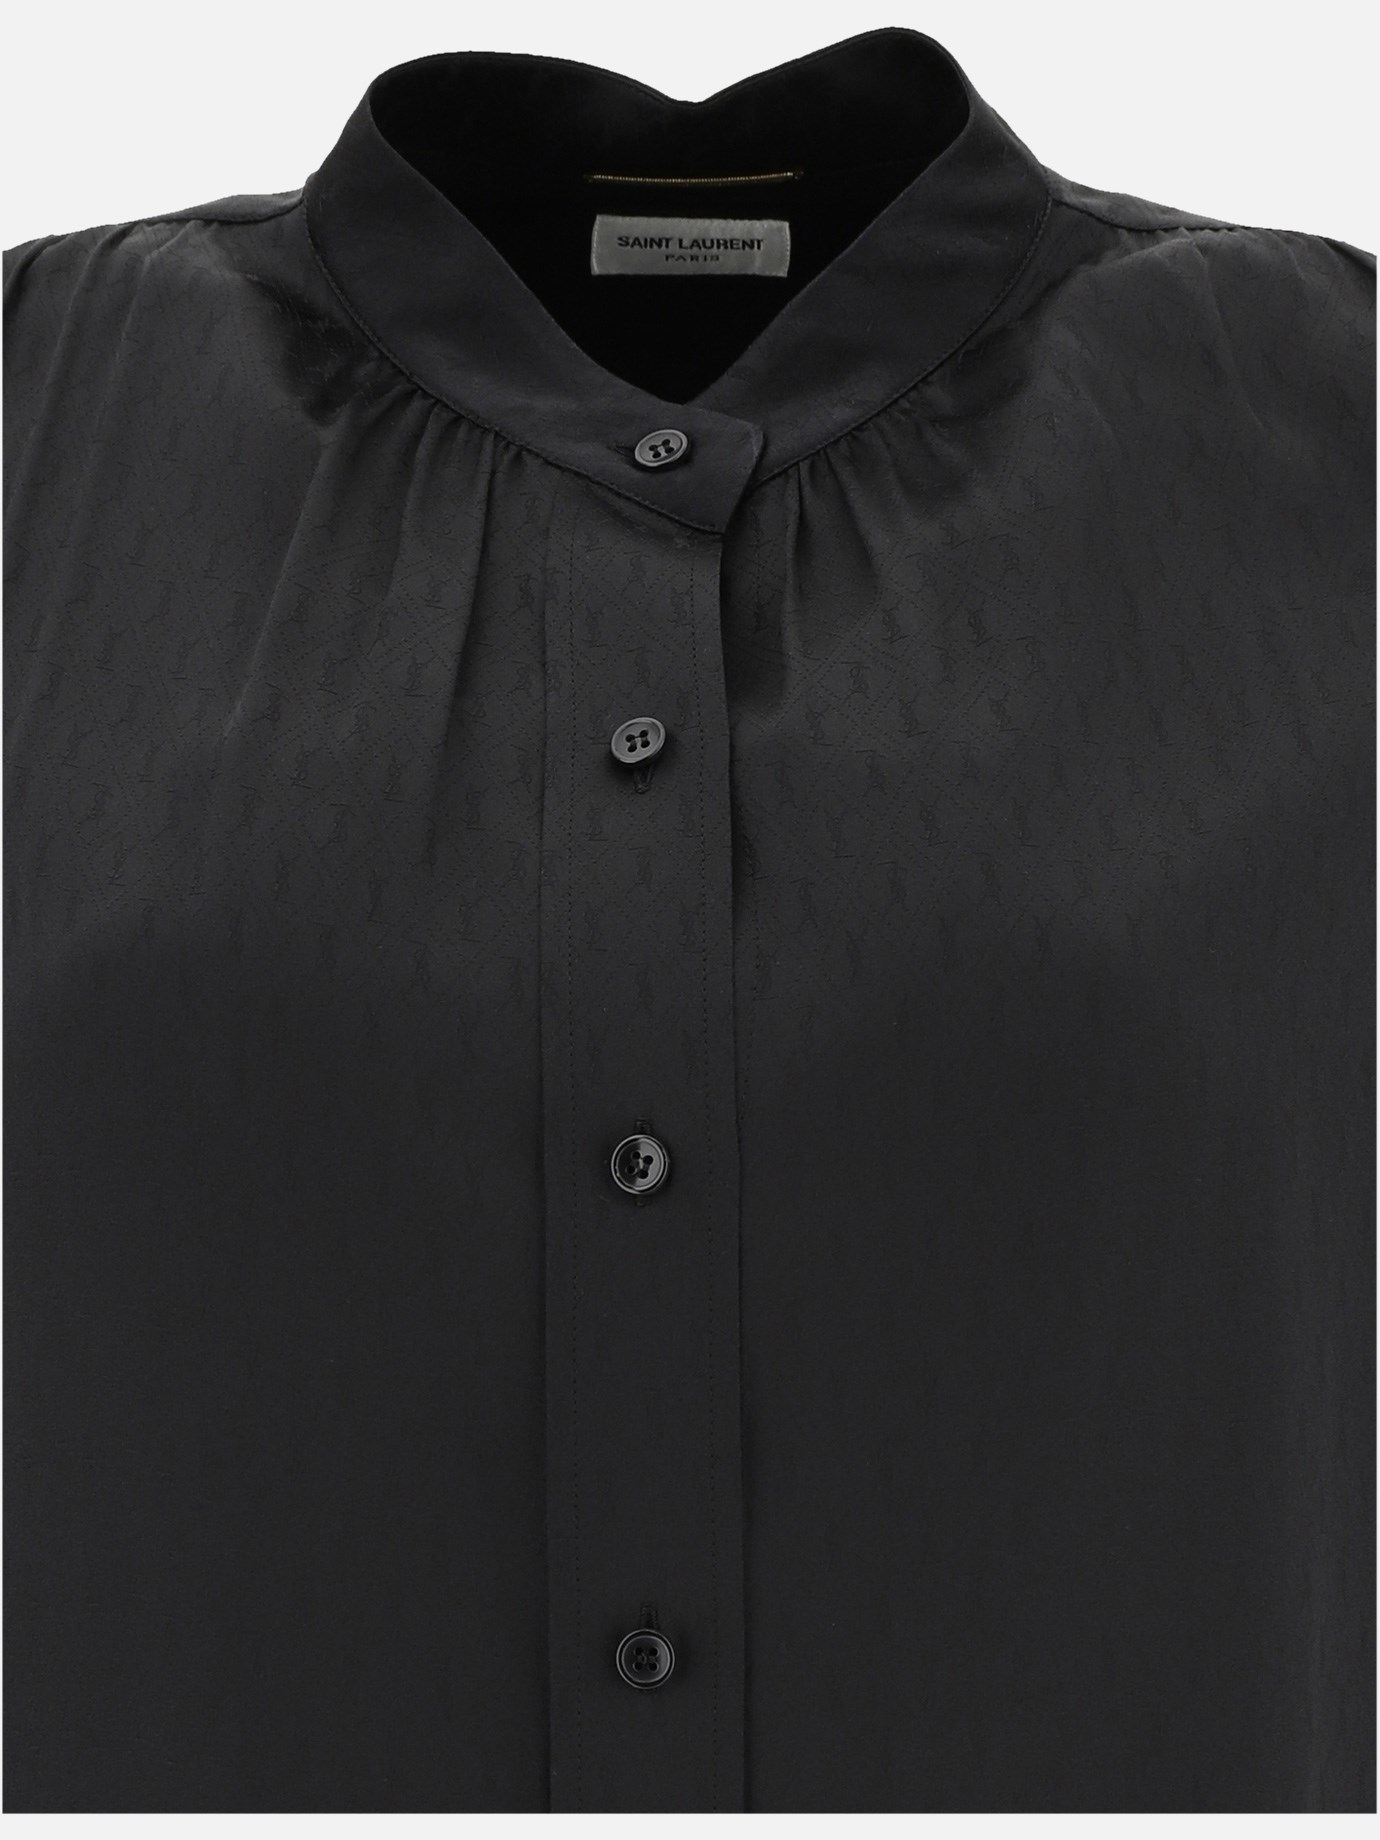  Monogram  blouse by Saint Laurent